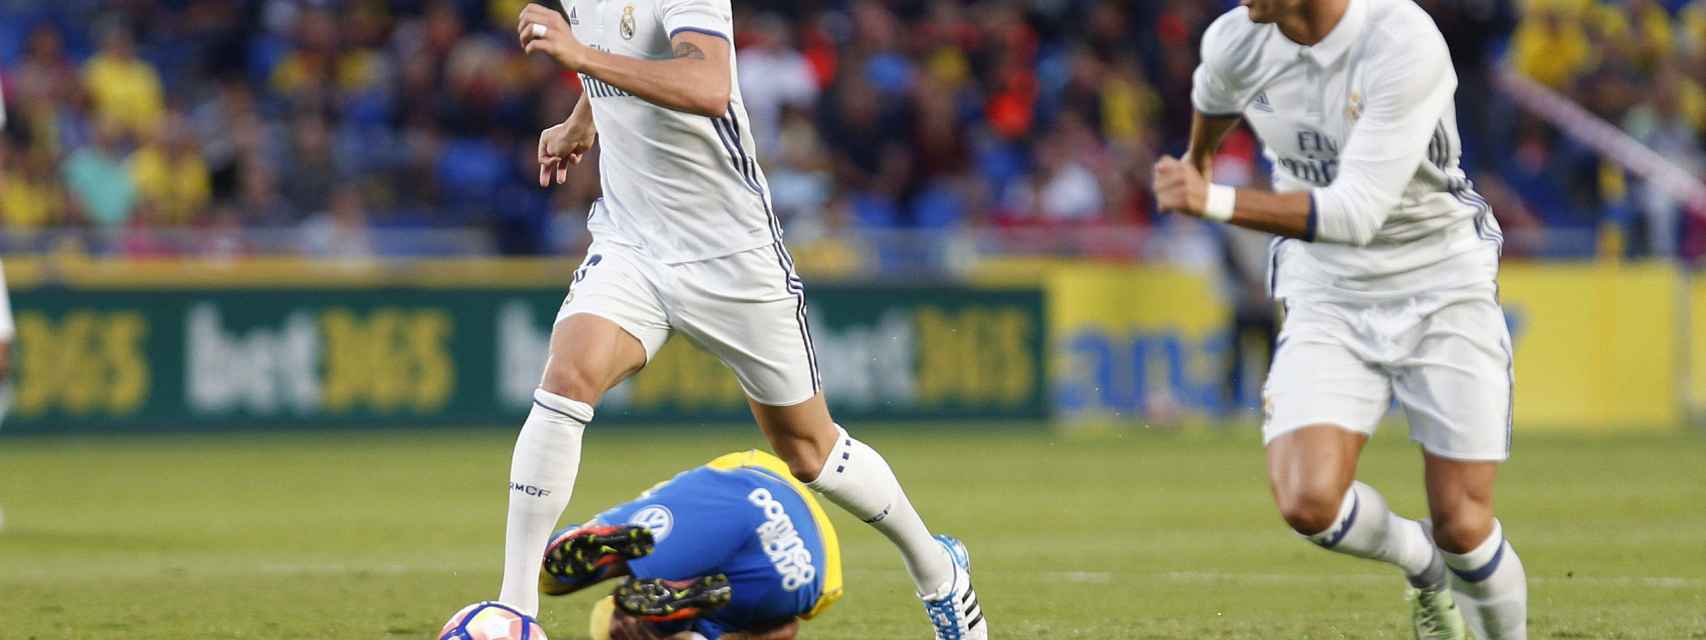 Siga en vivo el partido entre Las Palmas y Real Madrid